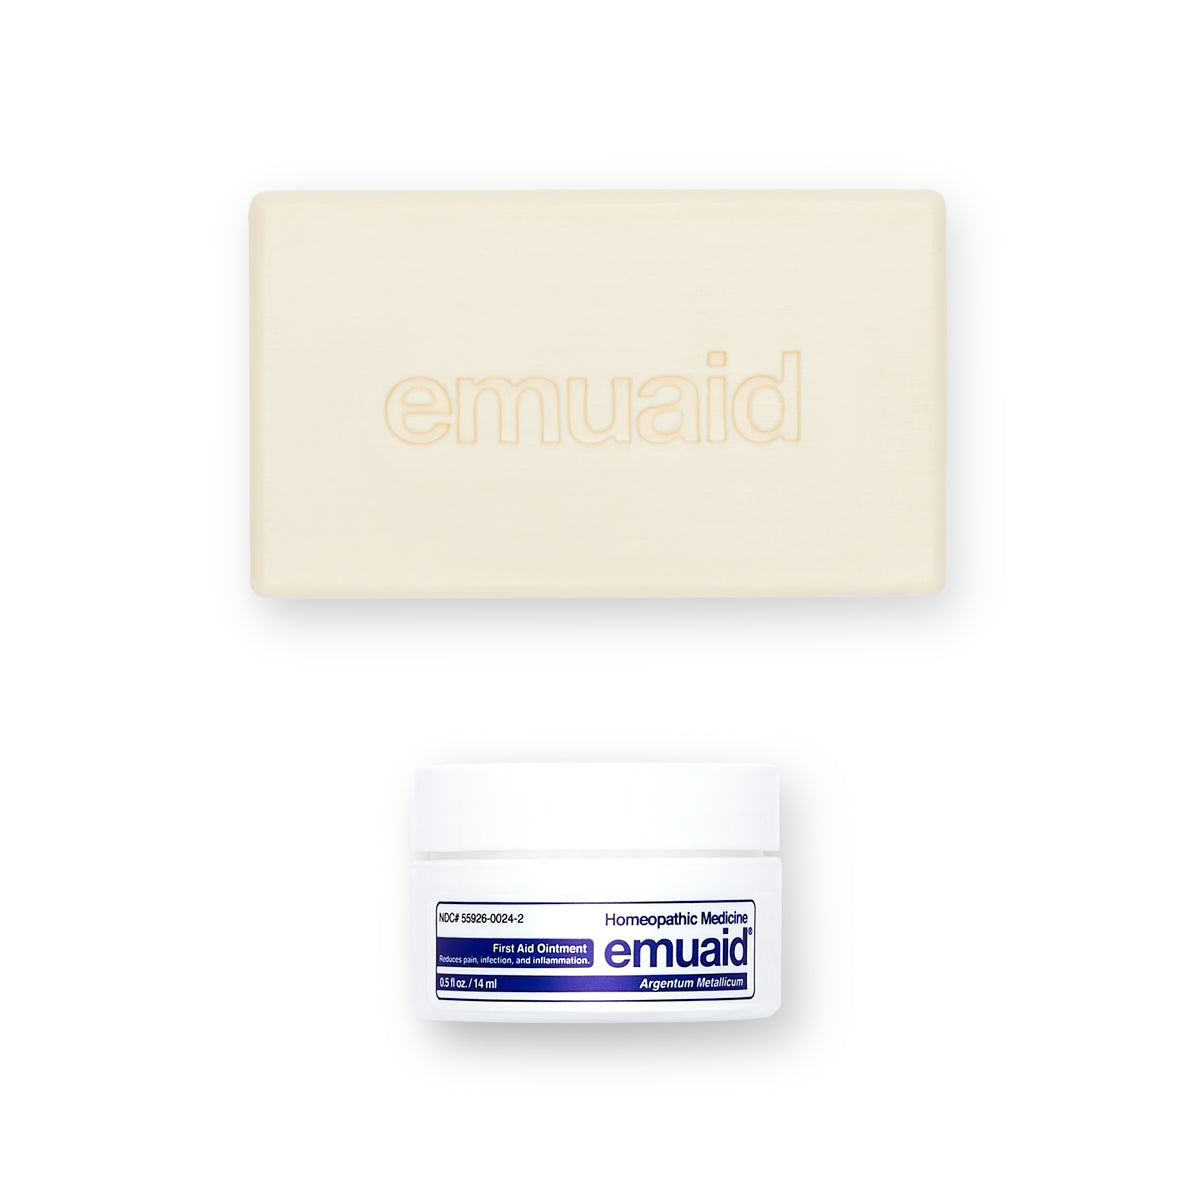 Dies ist ein Bild der EMUAID® Regular First Aid Ointment 0.5oz und der EMUAID® Therapeutic Moisture Bar.  